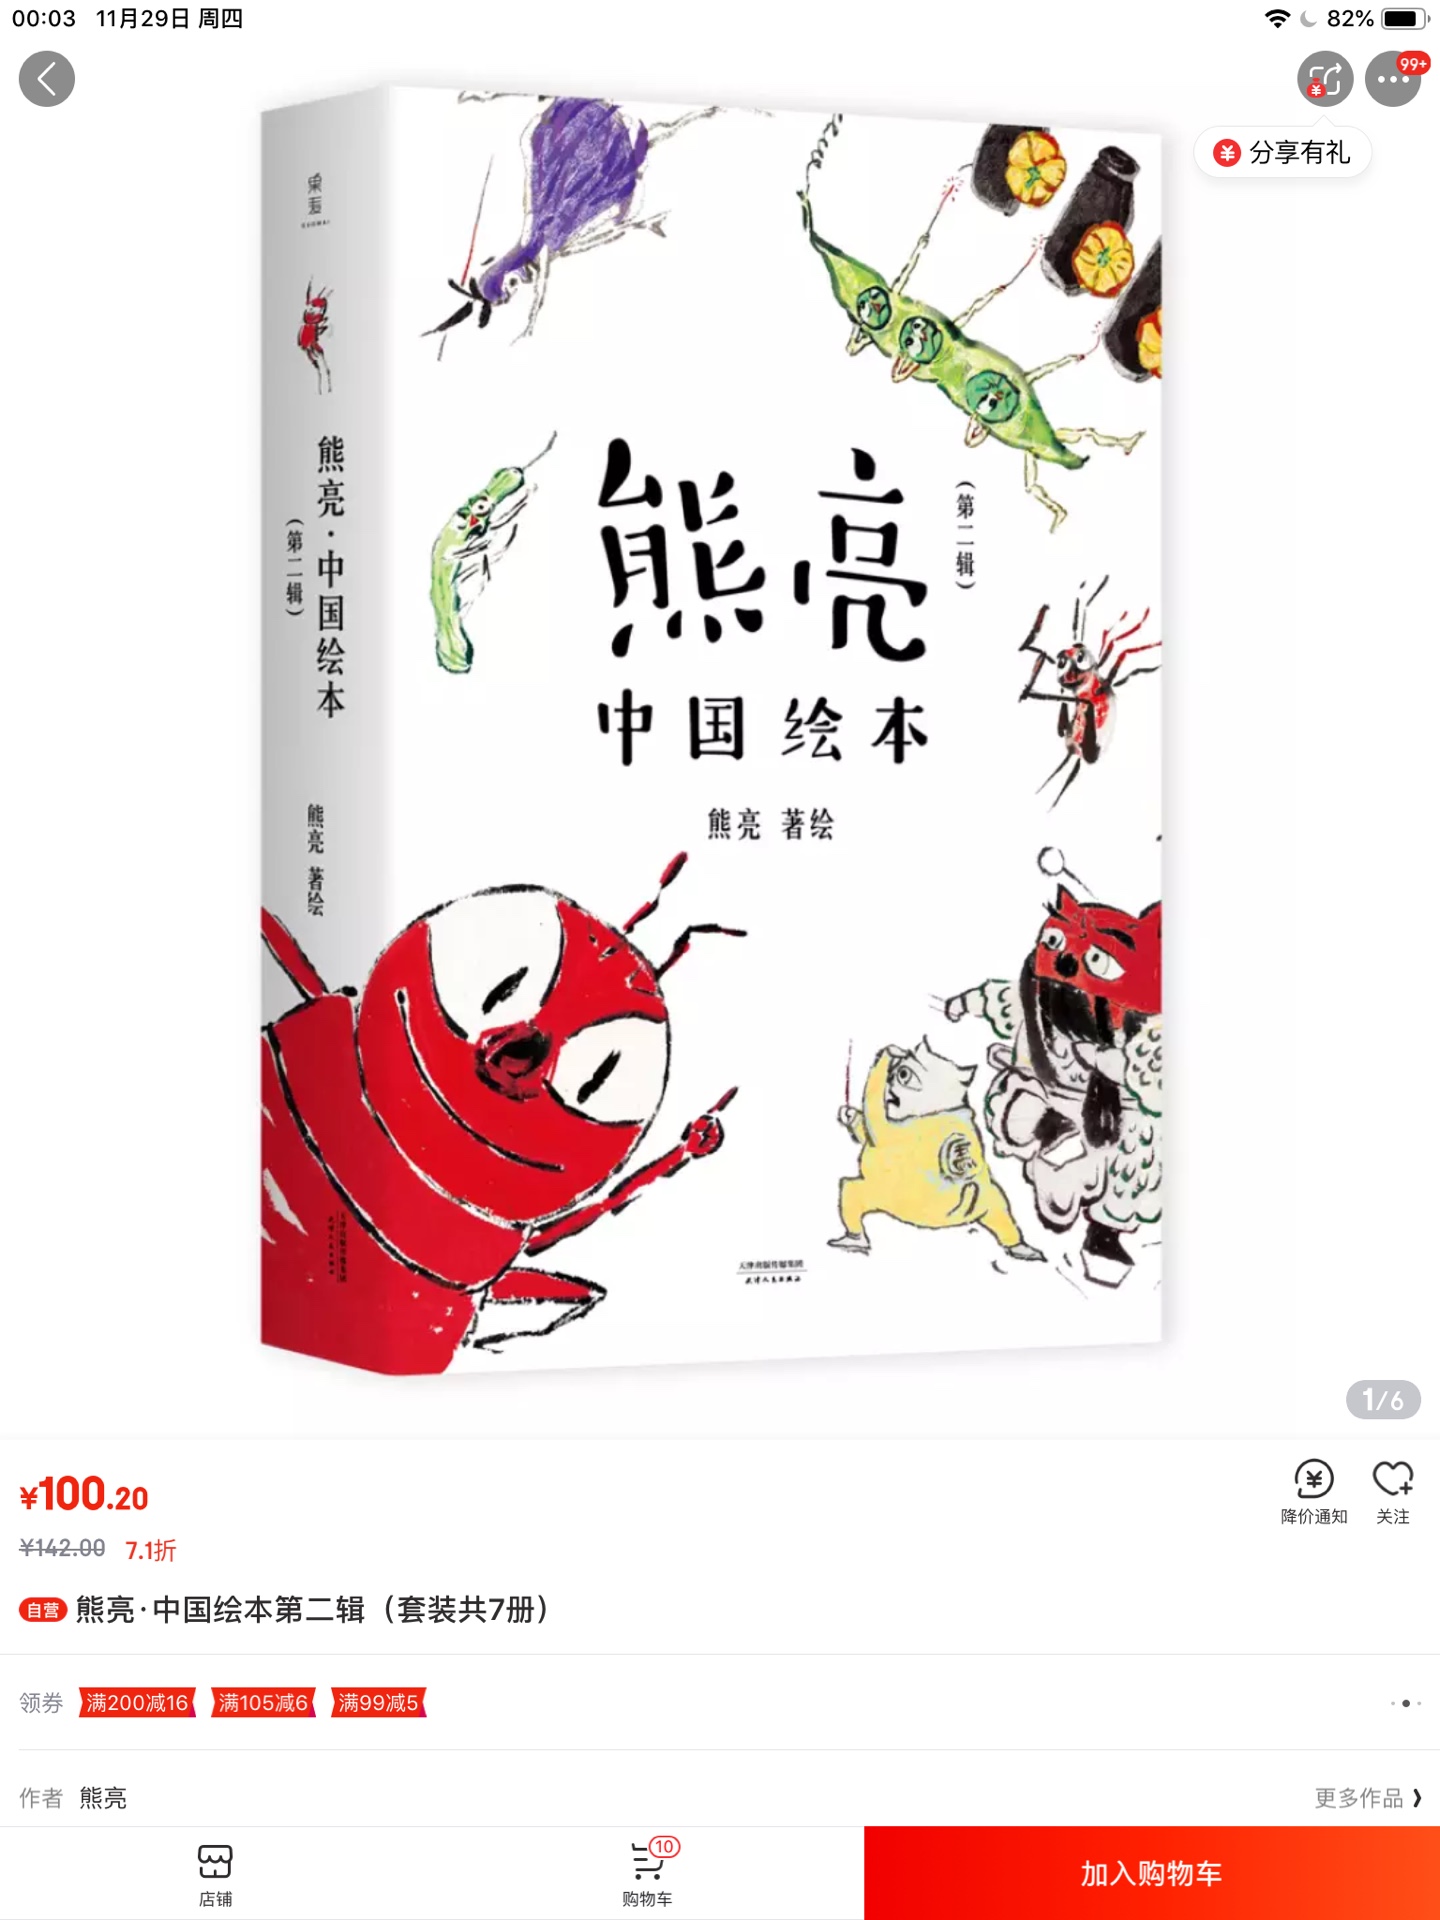 有活动的时候在买书最划算了   买了第一季和第二季 给孩子看一些中国风的绘本